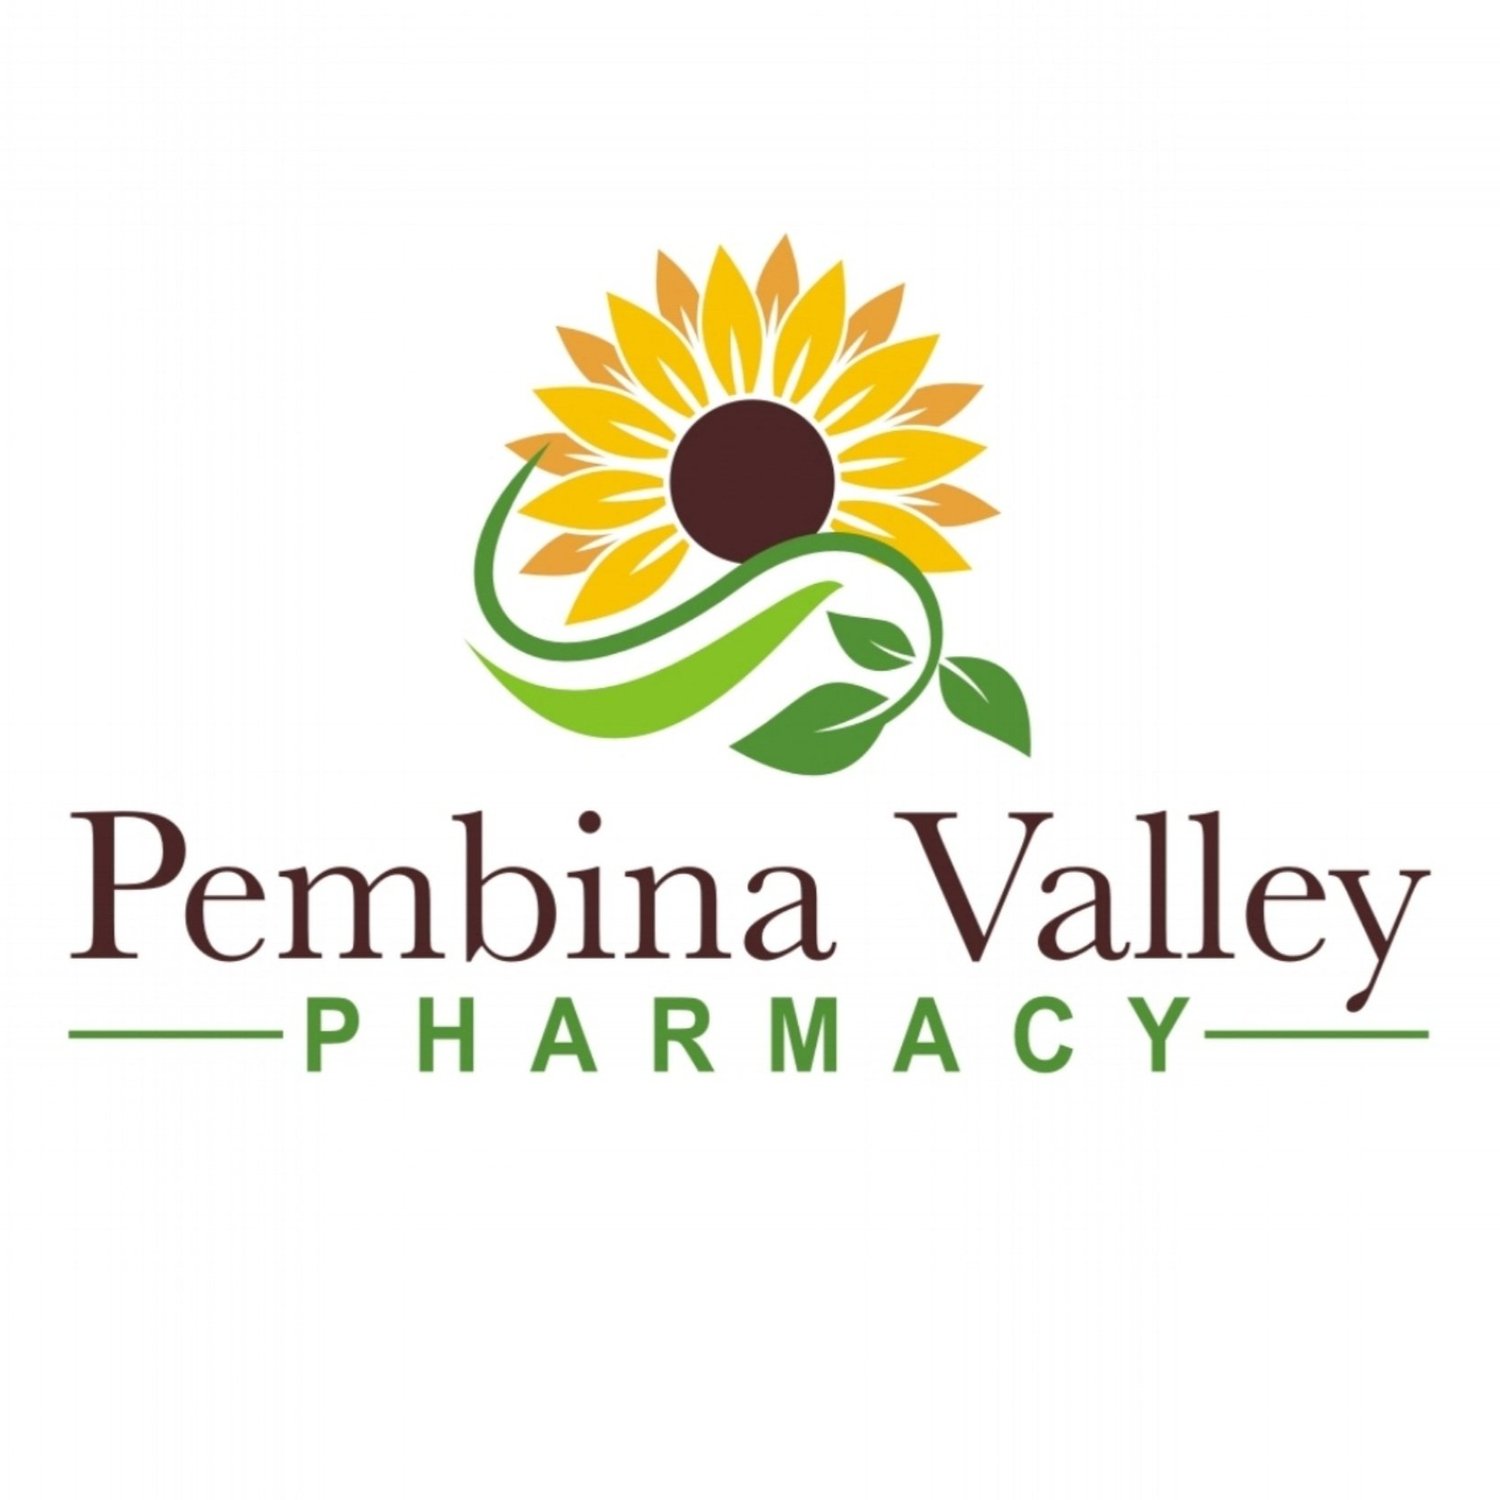 Pembina Valley Pharmacy